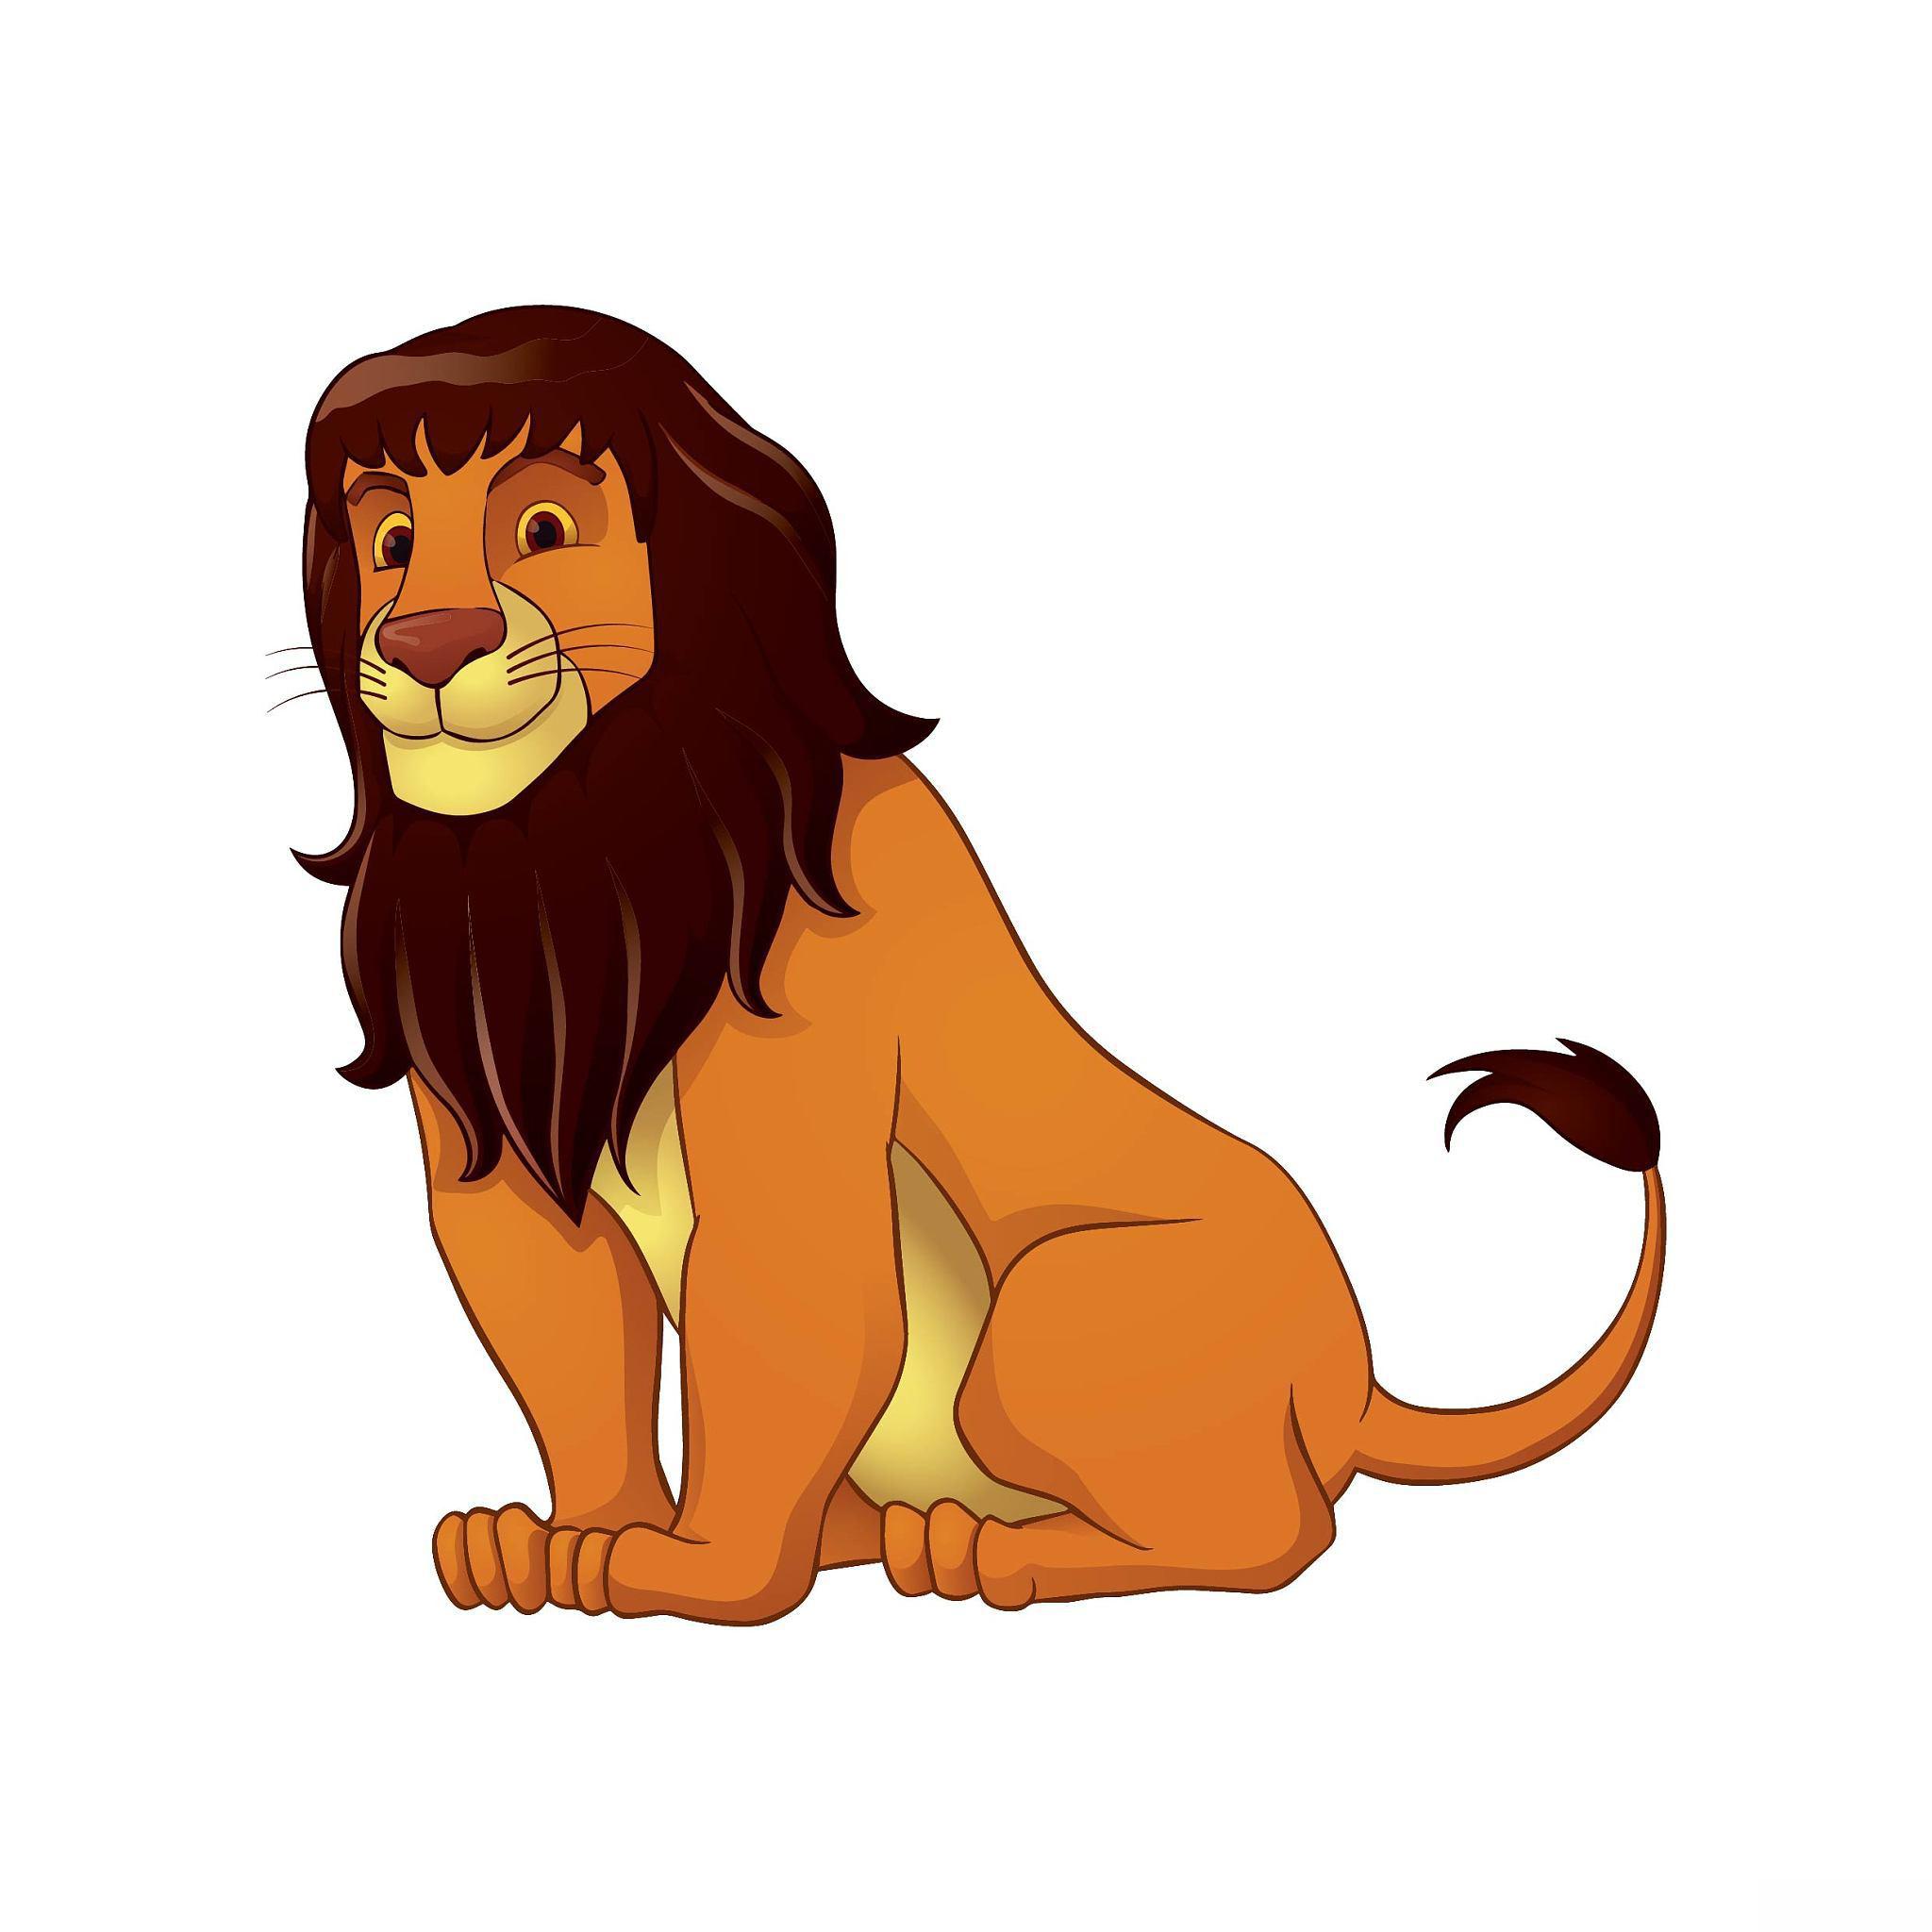 《狮子王》:制作过程 《狮子王》作为经典动画,其制作过程投入大量